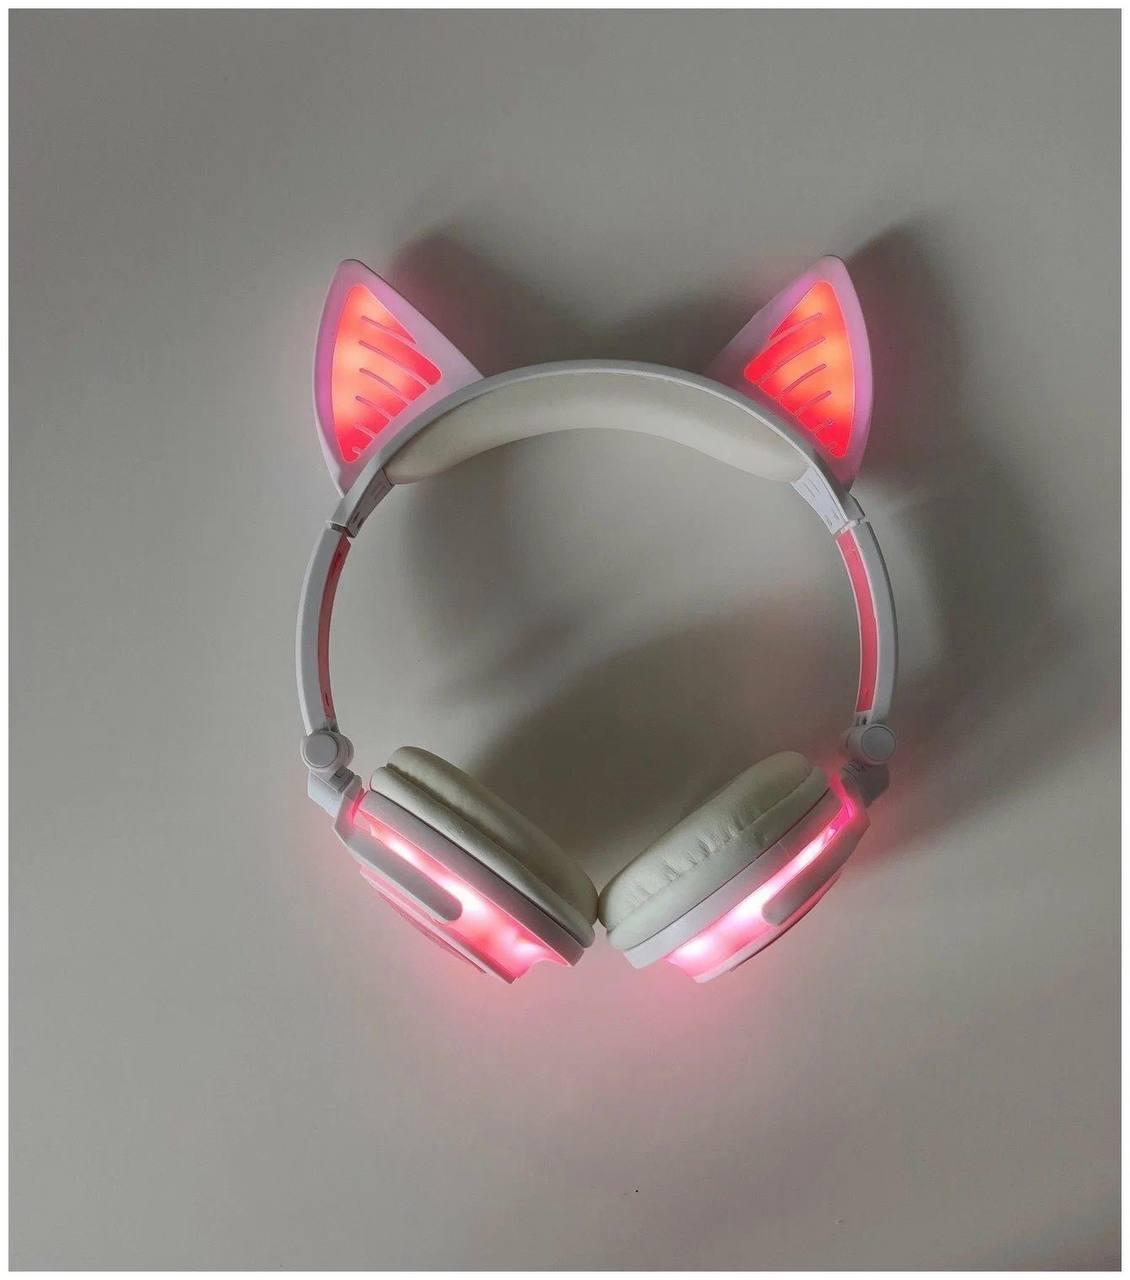 Светящиеся Bluetooth наушники UFT BL107 Pink с ушками в японском стиле